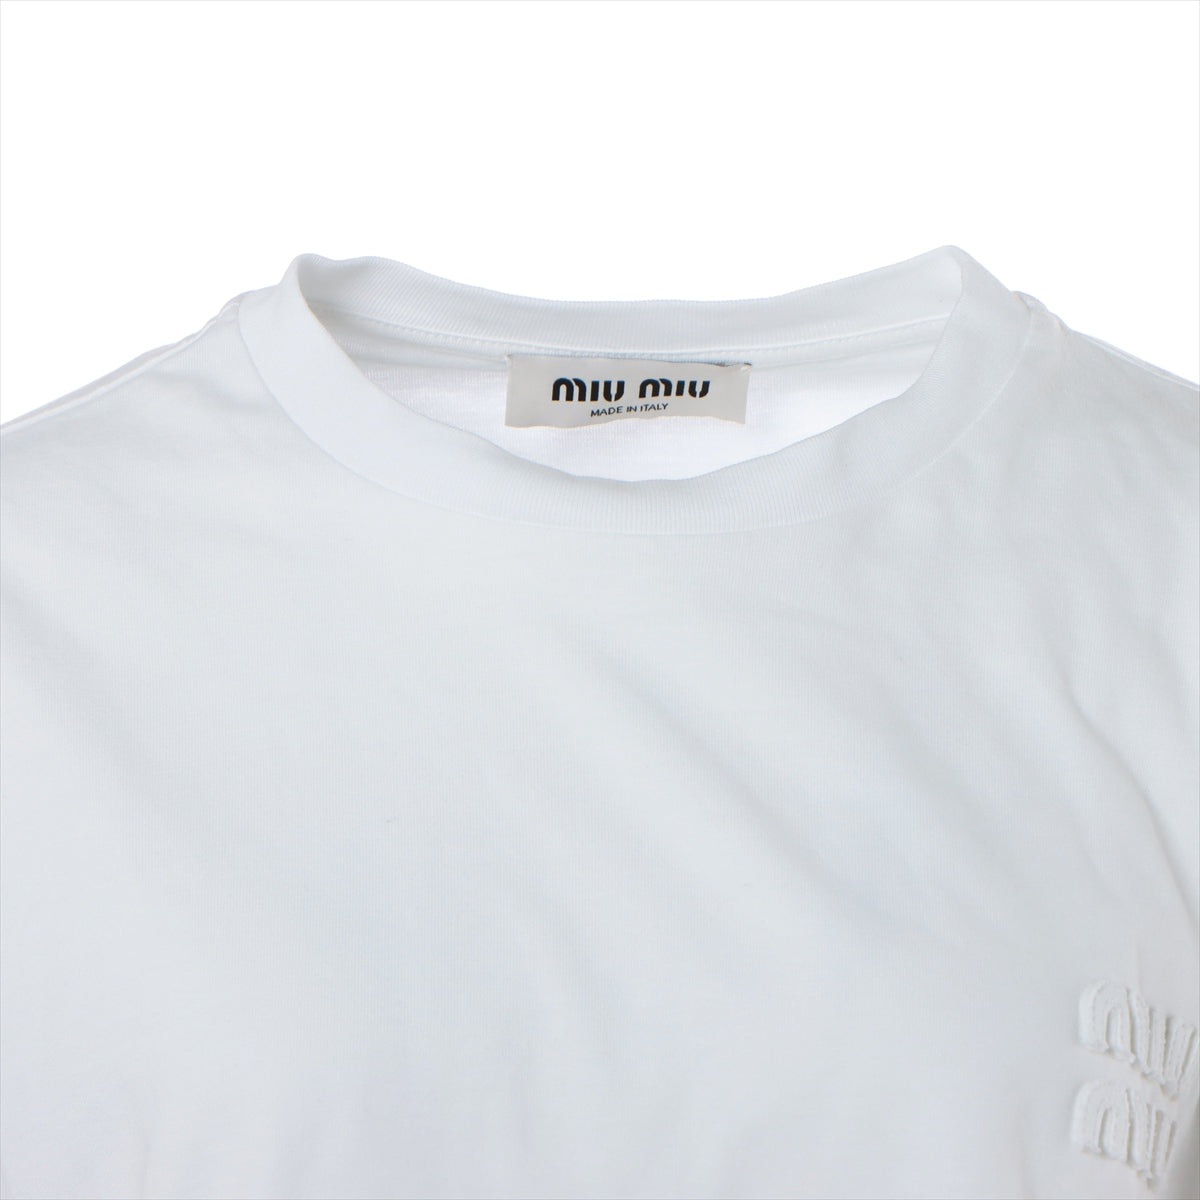 ミュウミュウ 22年 コットン Tシャツ S レディース ホワイト MJN381 